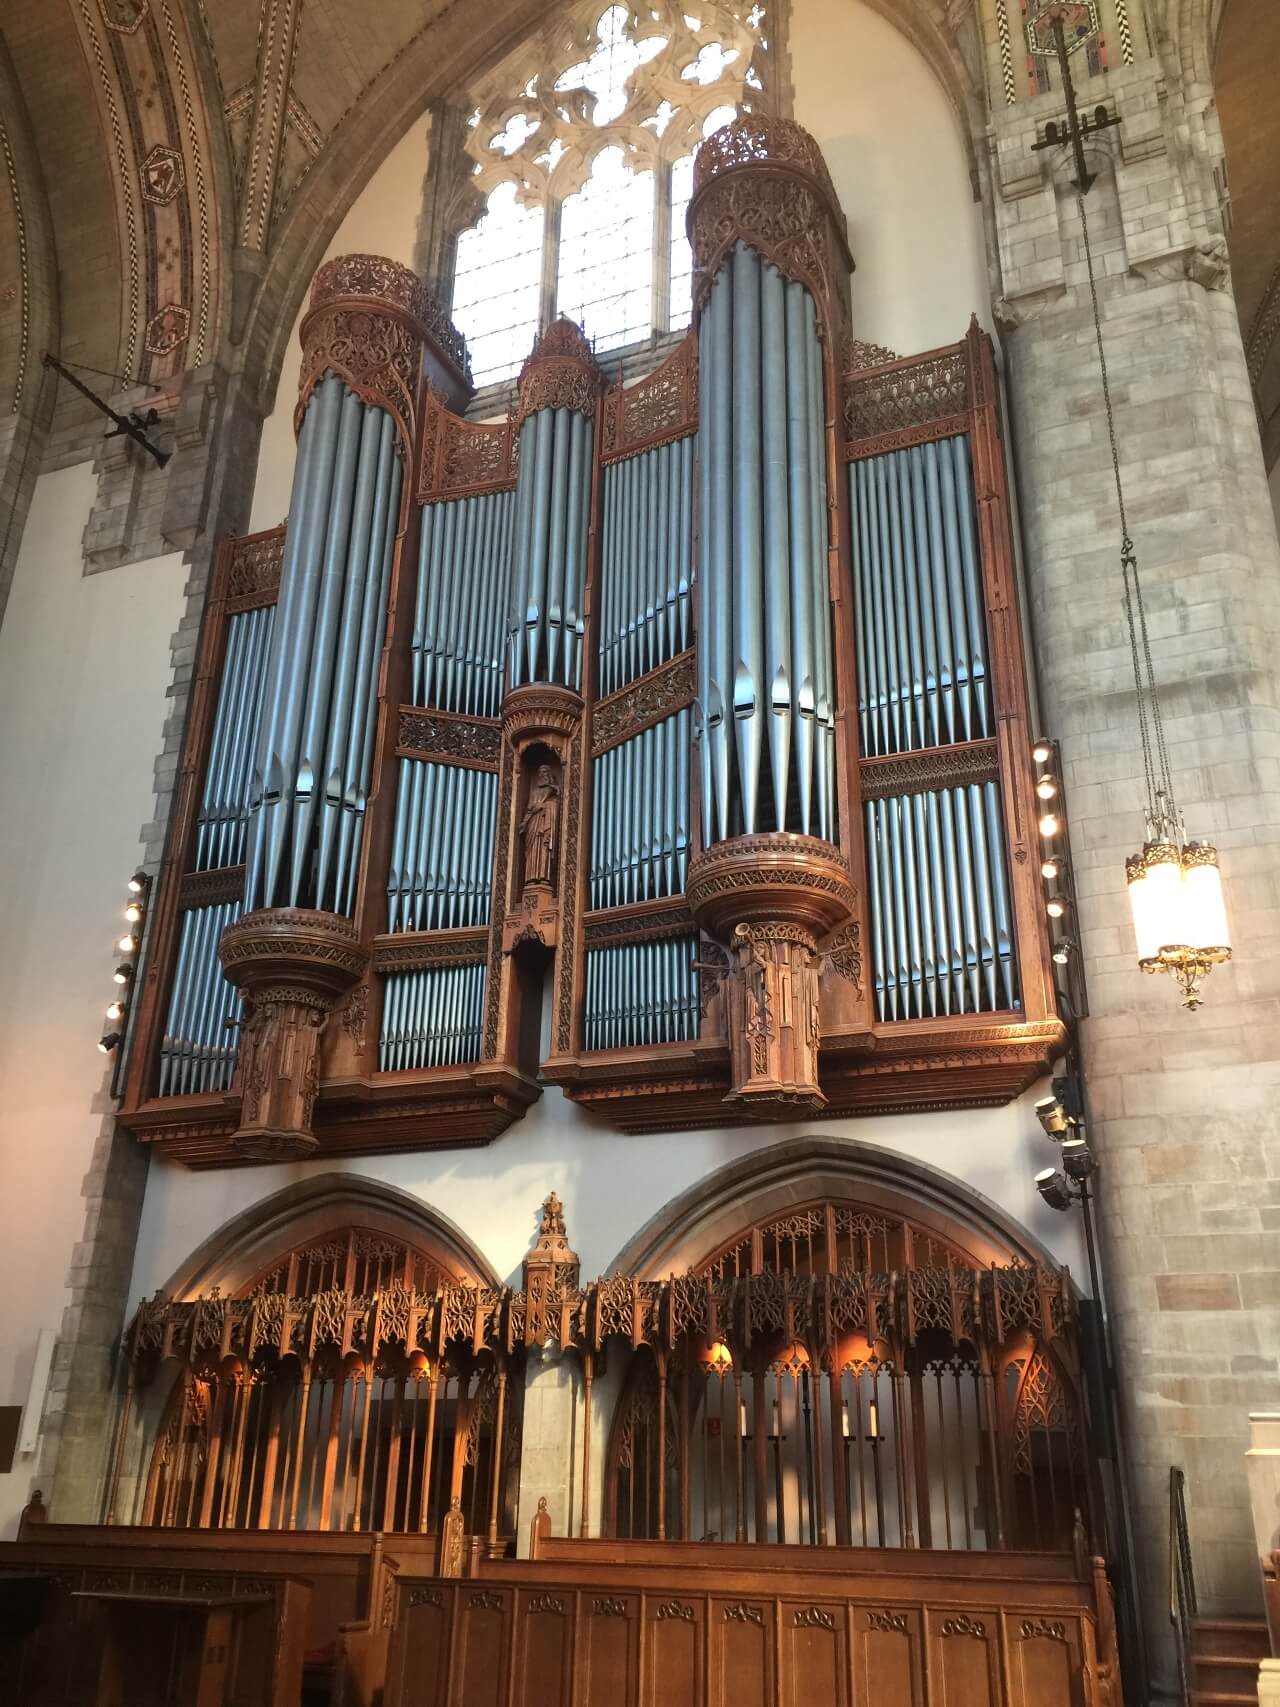 Choir organ case north wall